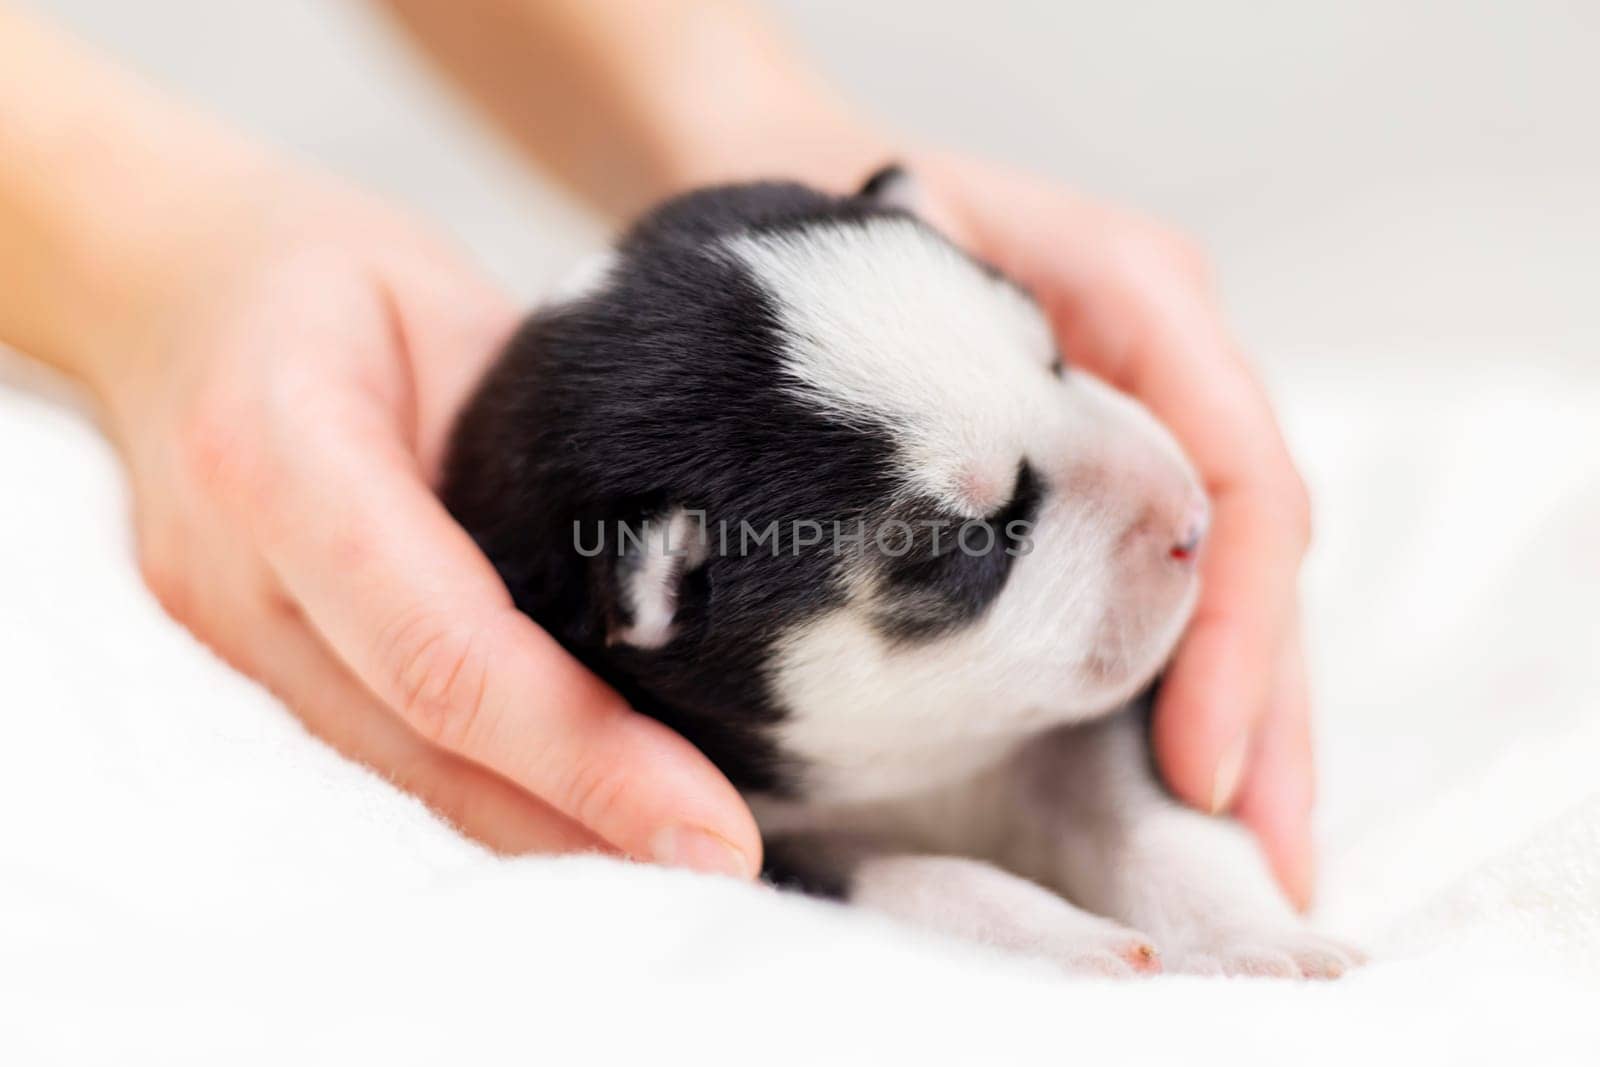 Newborn Puppy in Human Hands by andreyz